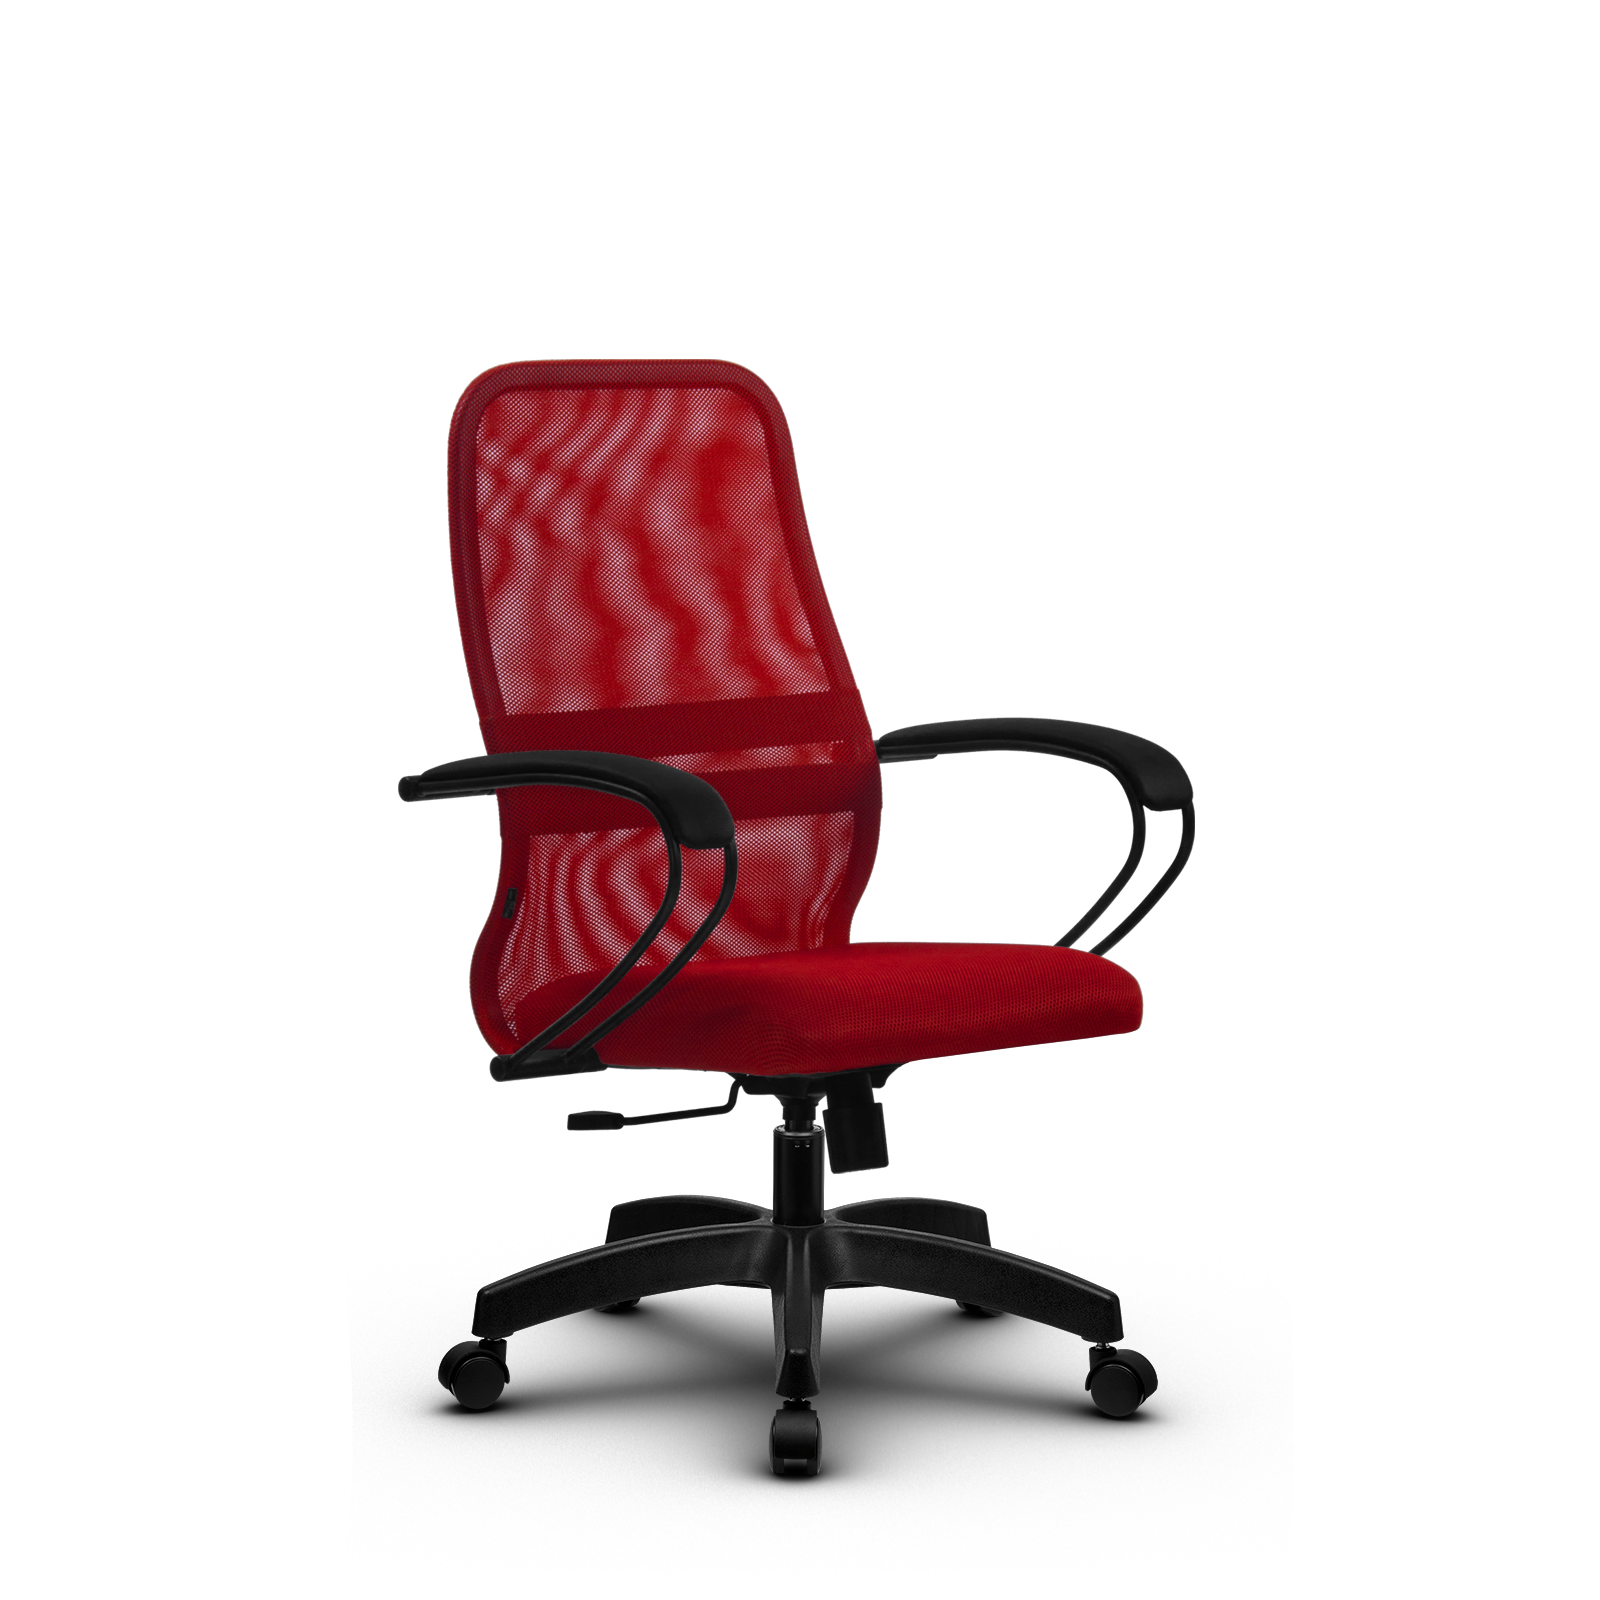 90488601 Офисное кресло Su прочный сетчатый материал цвет красный z312462623 STLM-0248479 МЕТТА